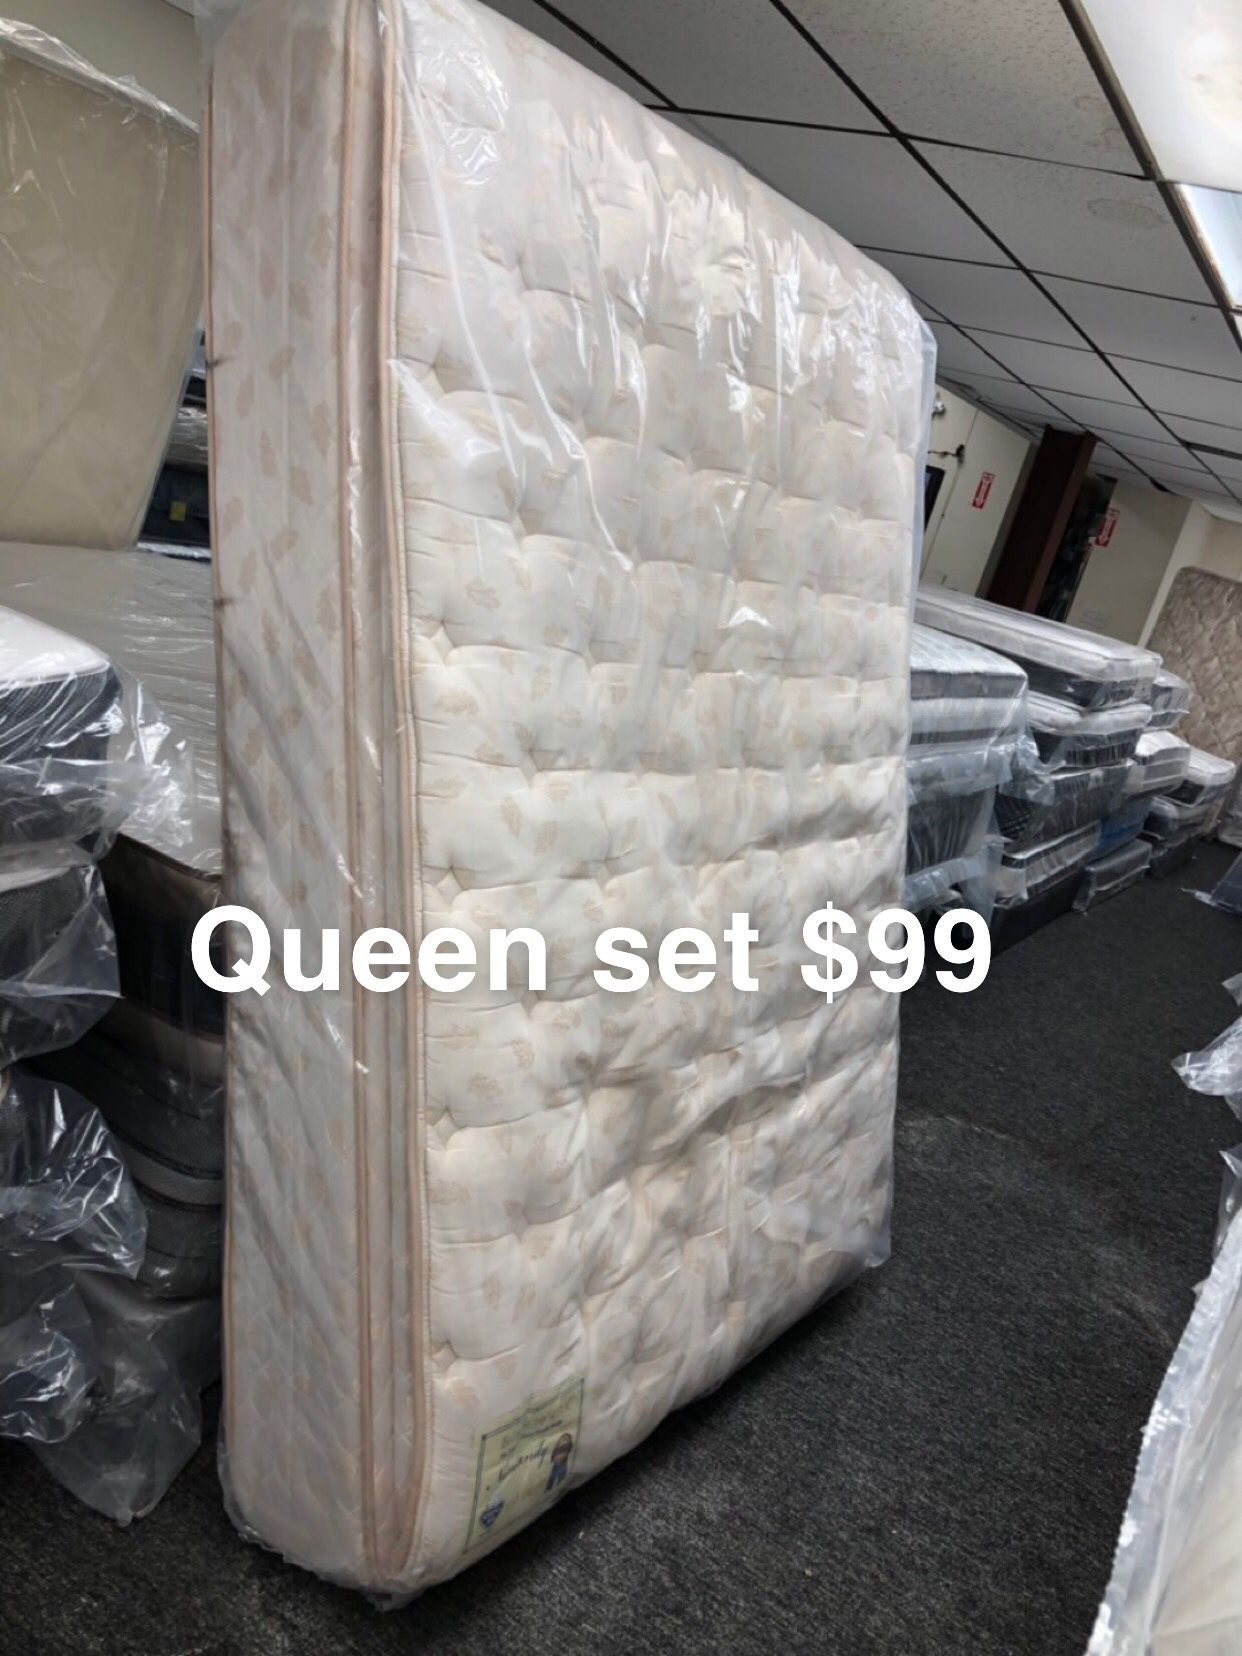 Queen set $99